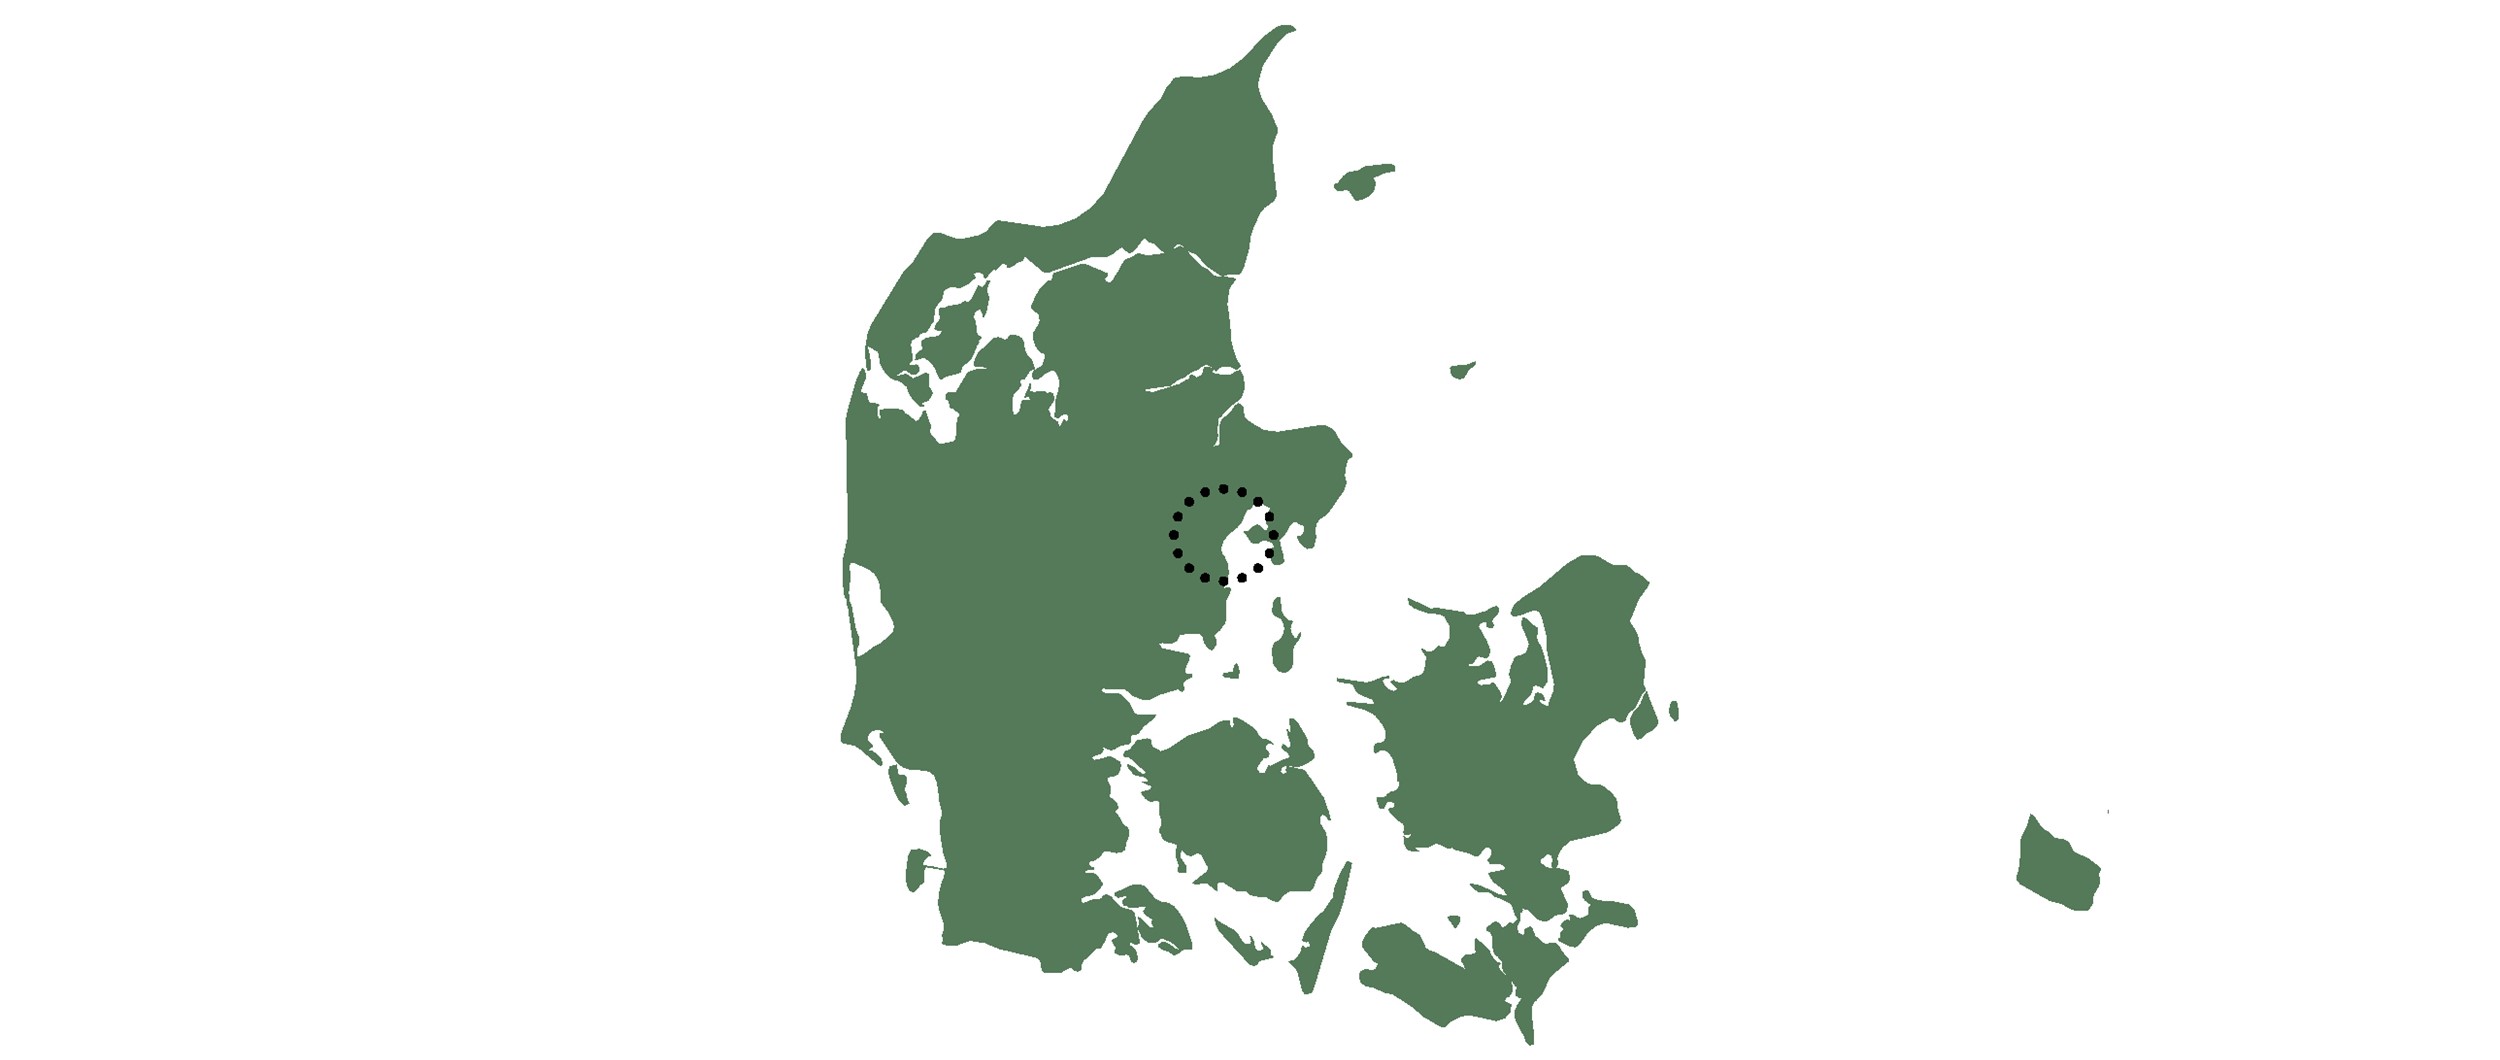 Projektet er beliggende i forstadskvarteret Risskov i Aarhus.